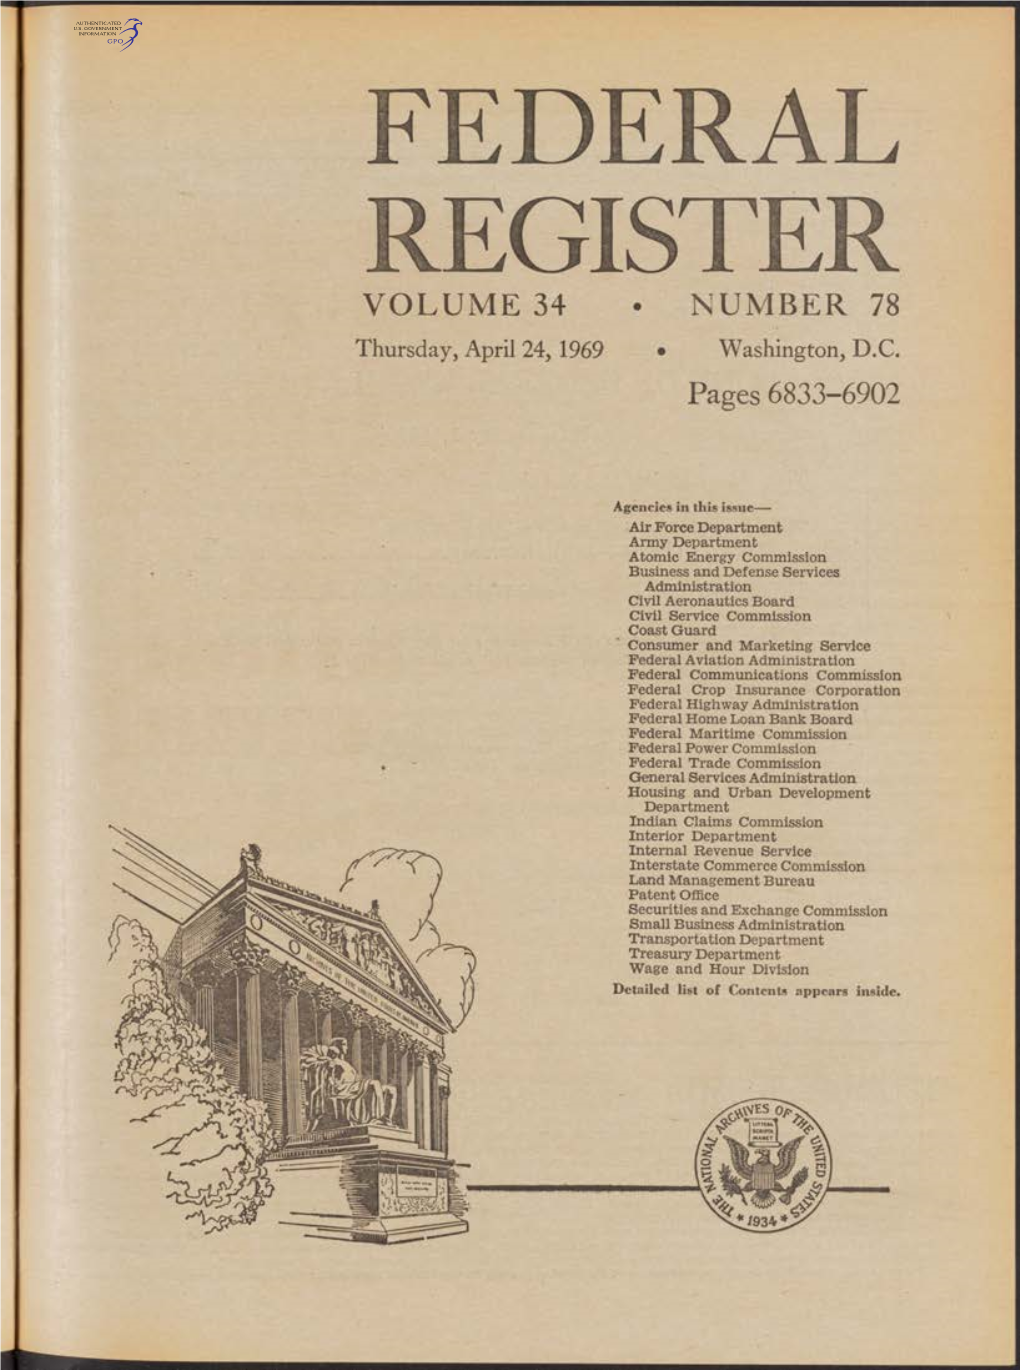 FEDERAL REGISTER VOLUME 34 • NUMBER 78 Thursday, April 24, 1969 • Washington, D.C